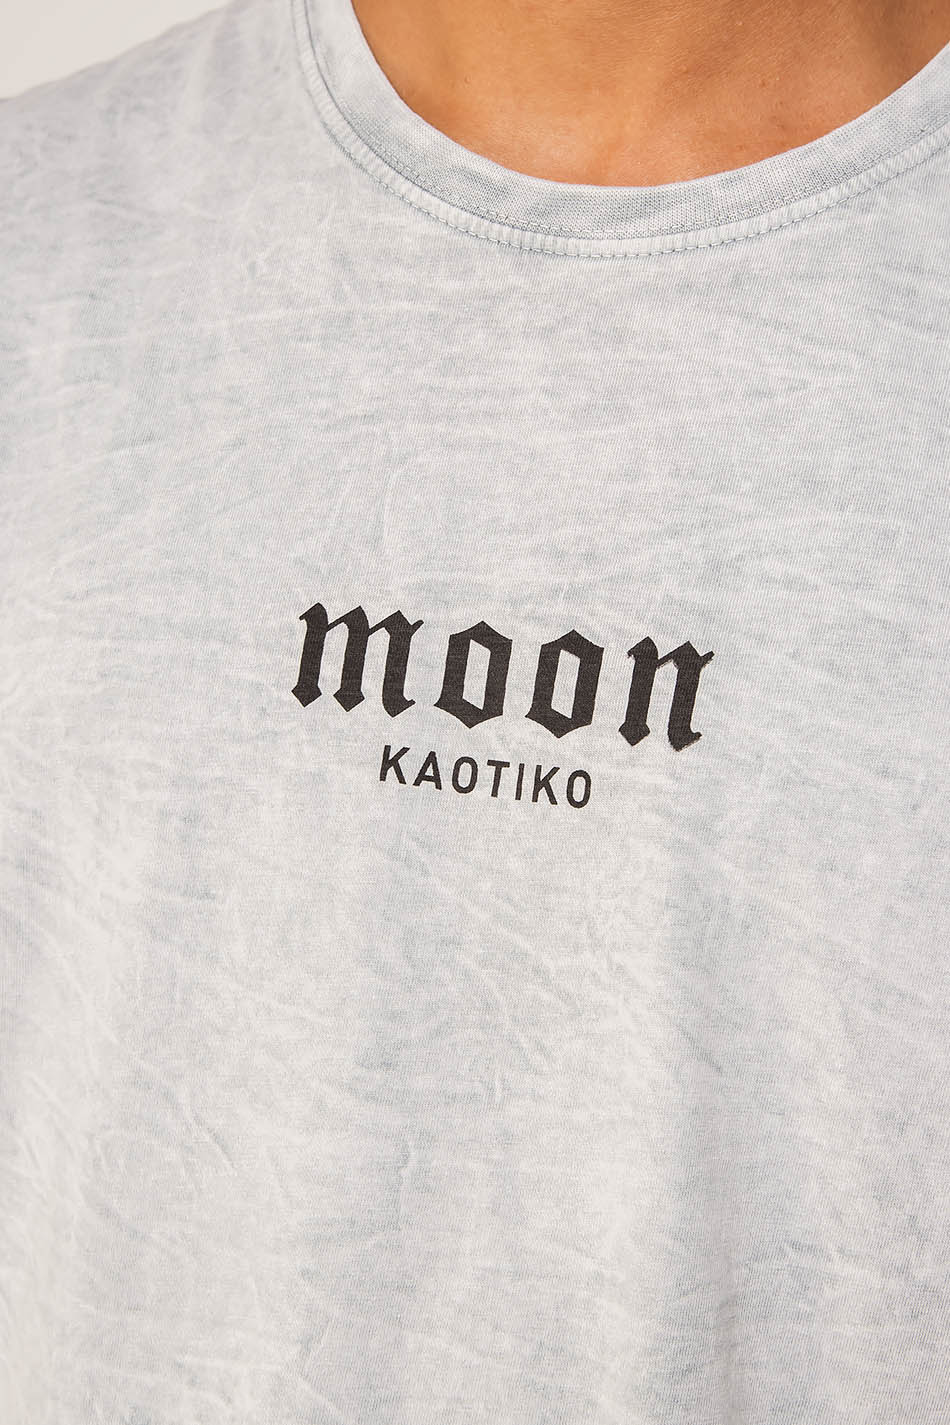 Moon T-Shirt verwaschen